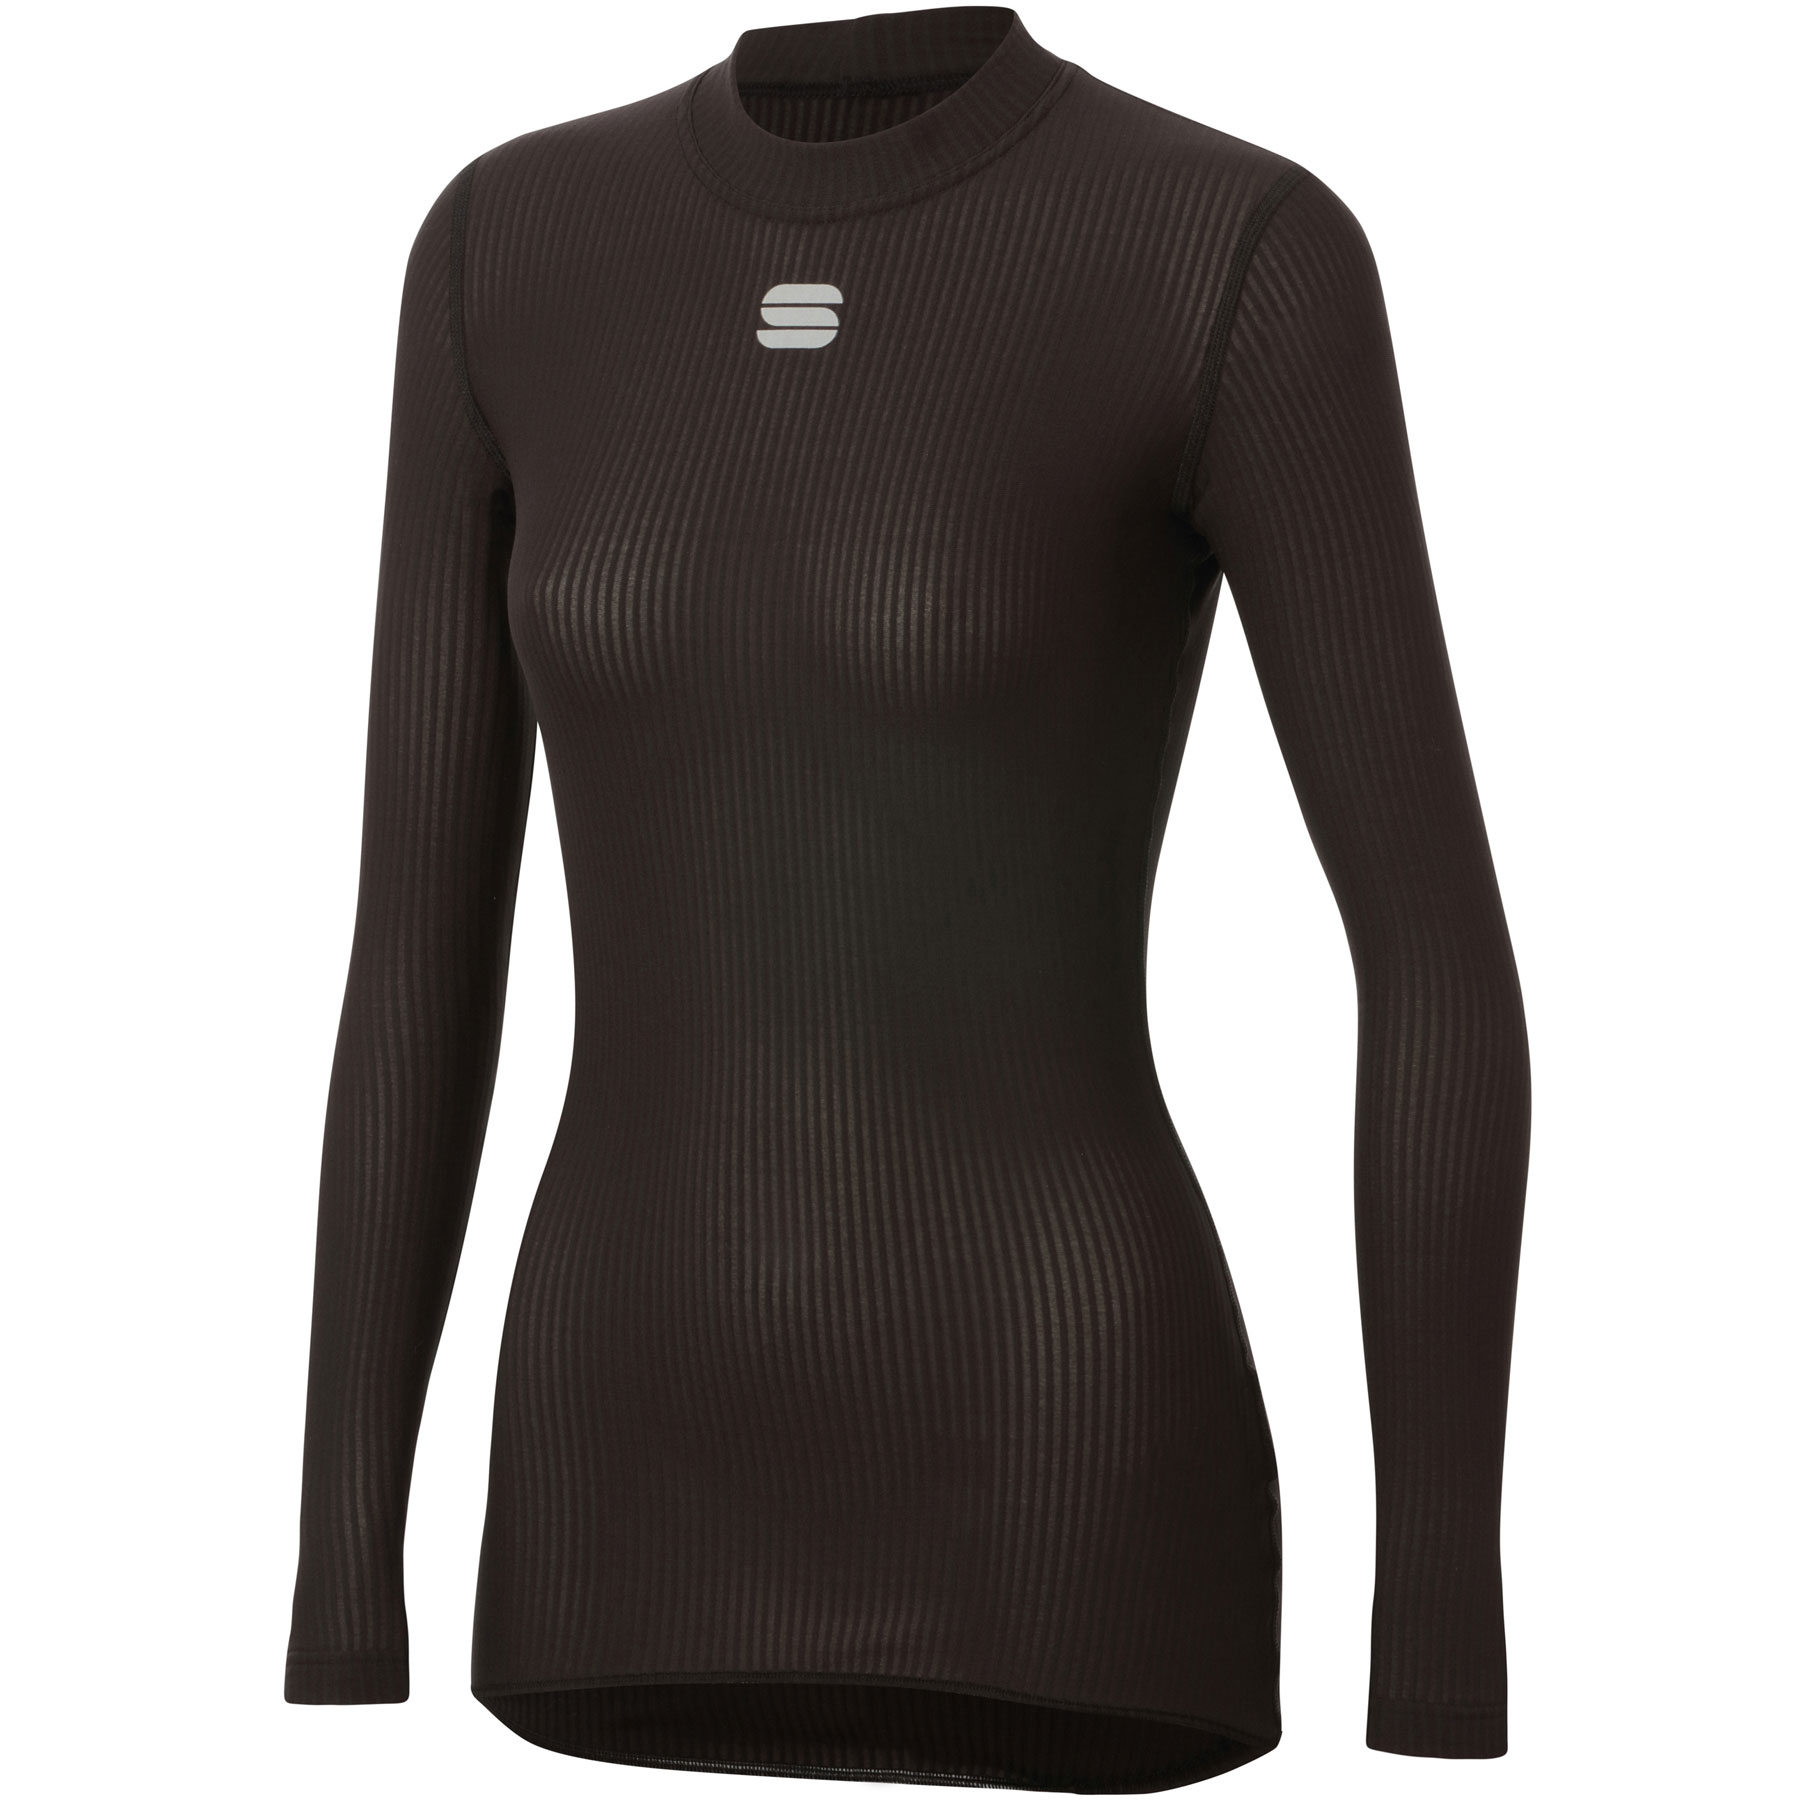 Produktbild von Sportful Bodyfit Pro Damen Baselayer Langarm-Unterhemd - 002 Black